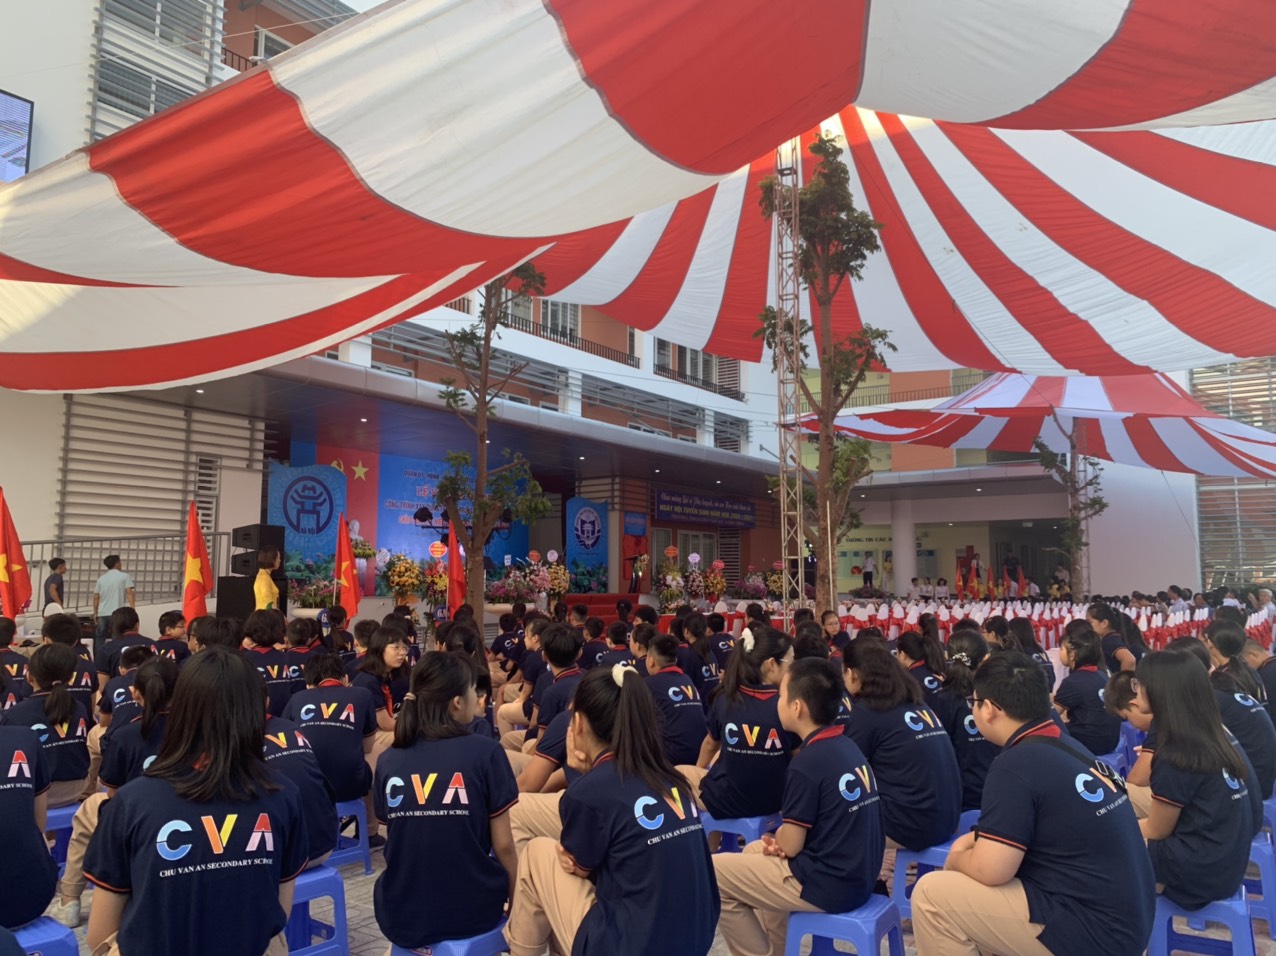 Hà Nội: Khánh thành trường THCS Chu Văn An chào mừng kỷ niệm 1010 năm Thăng Long - Hà Nội - Ảnh minh hoạ 5